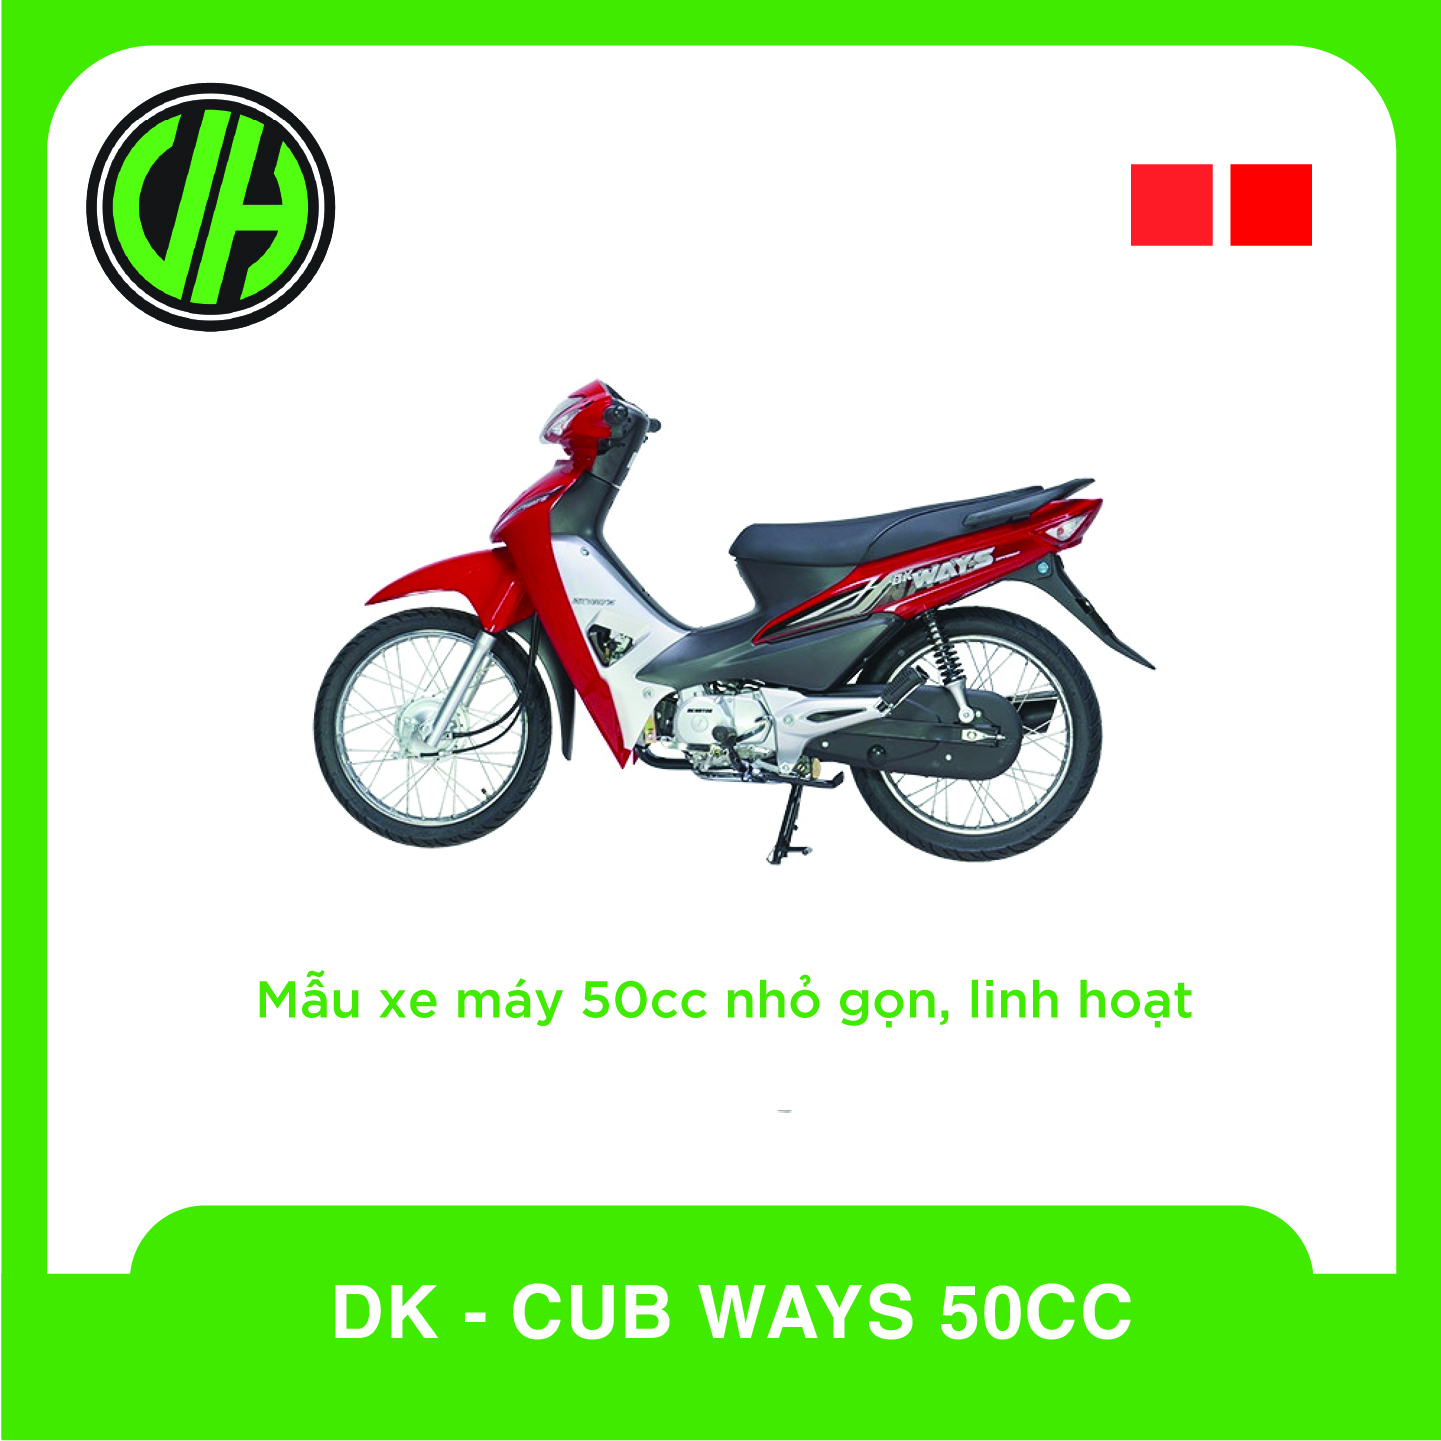 DK - CUB WAYS 50CC